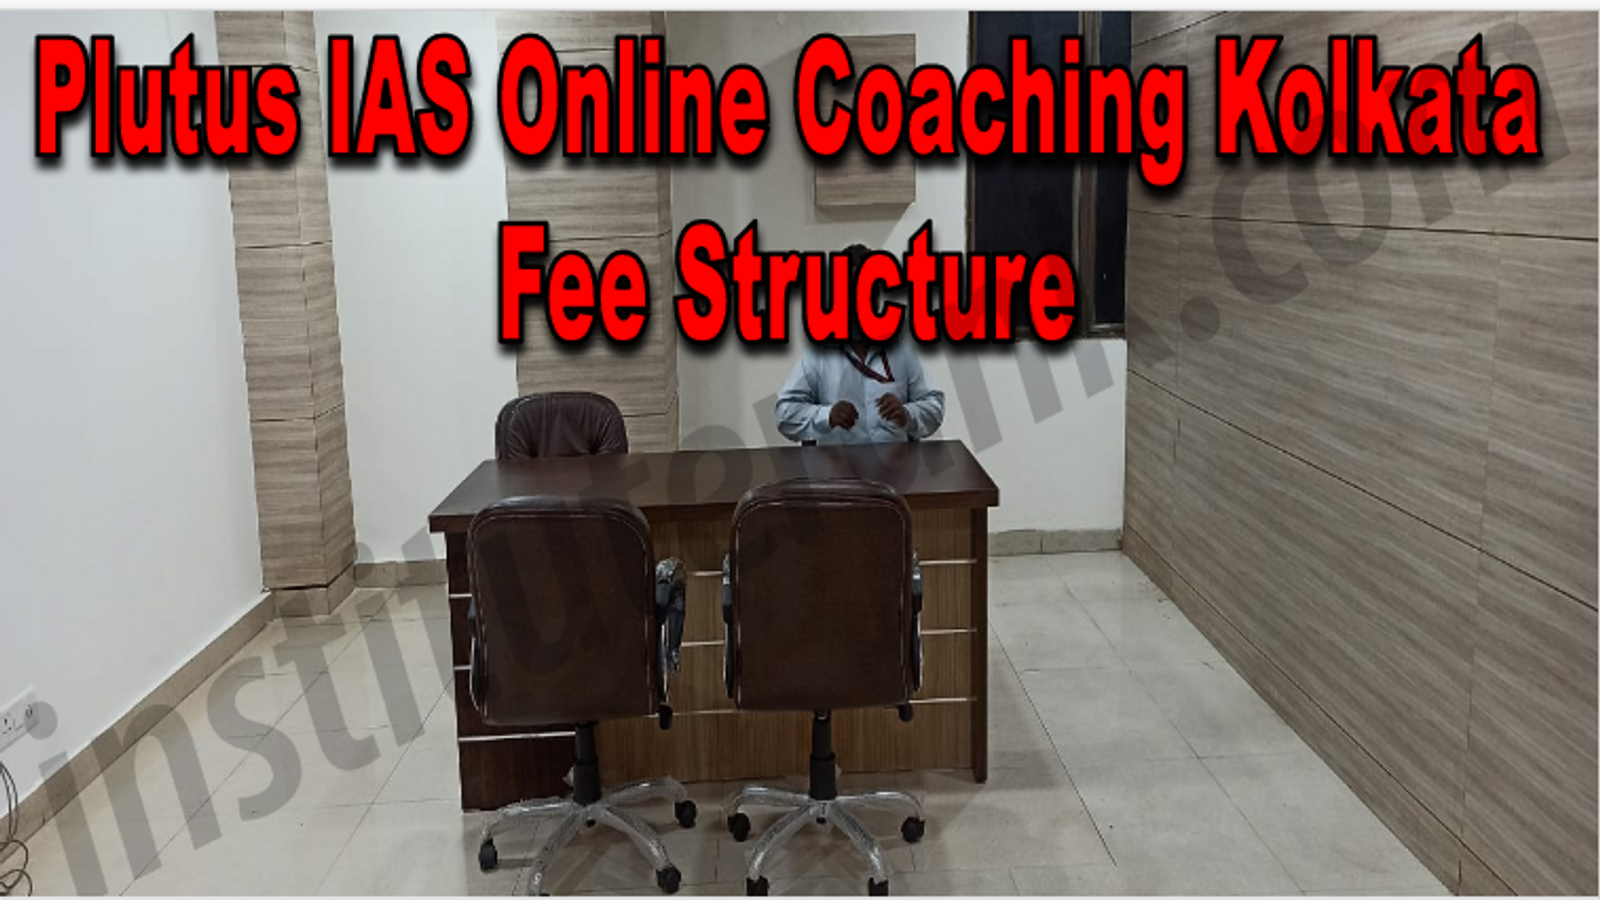 Plutus IAS Online Coaching Kolkata fee structure